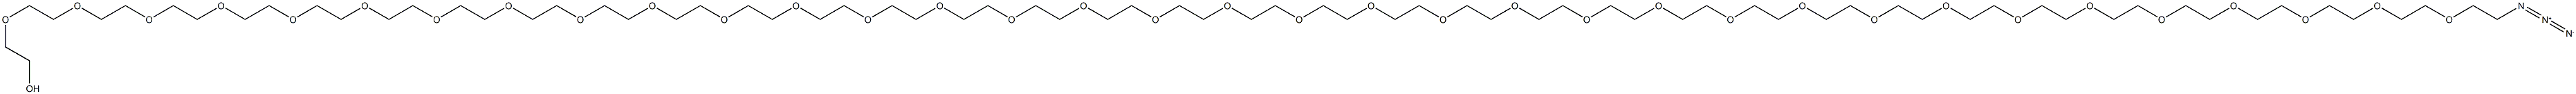 Azide-PEG12-alcohol picture